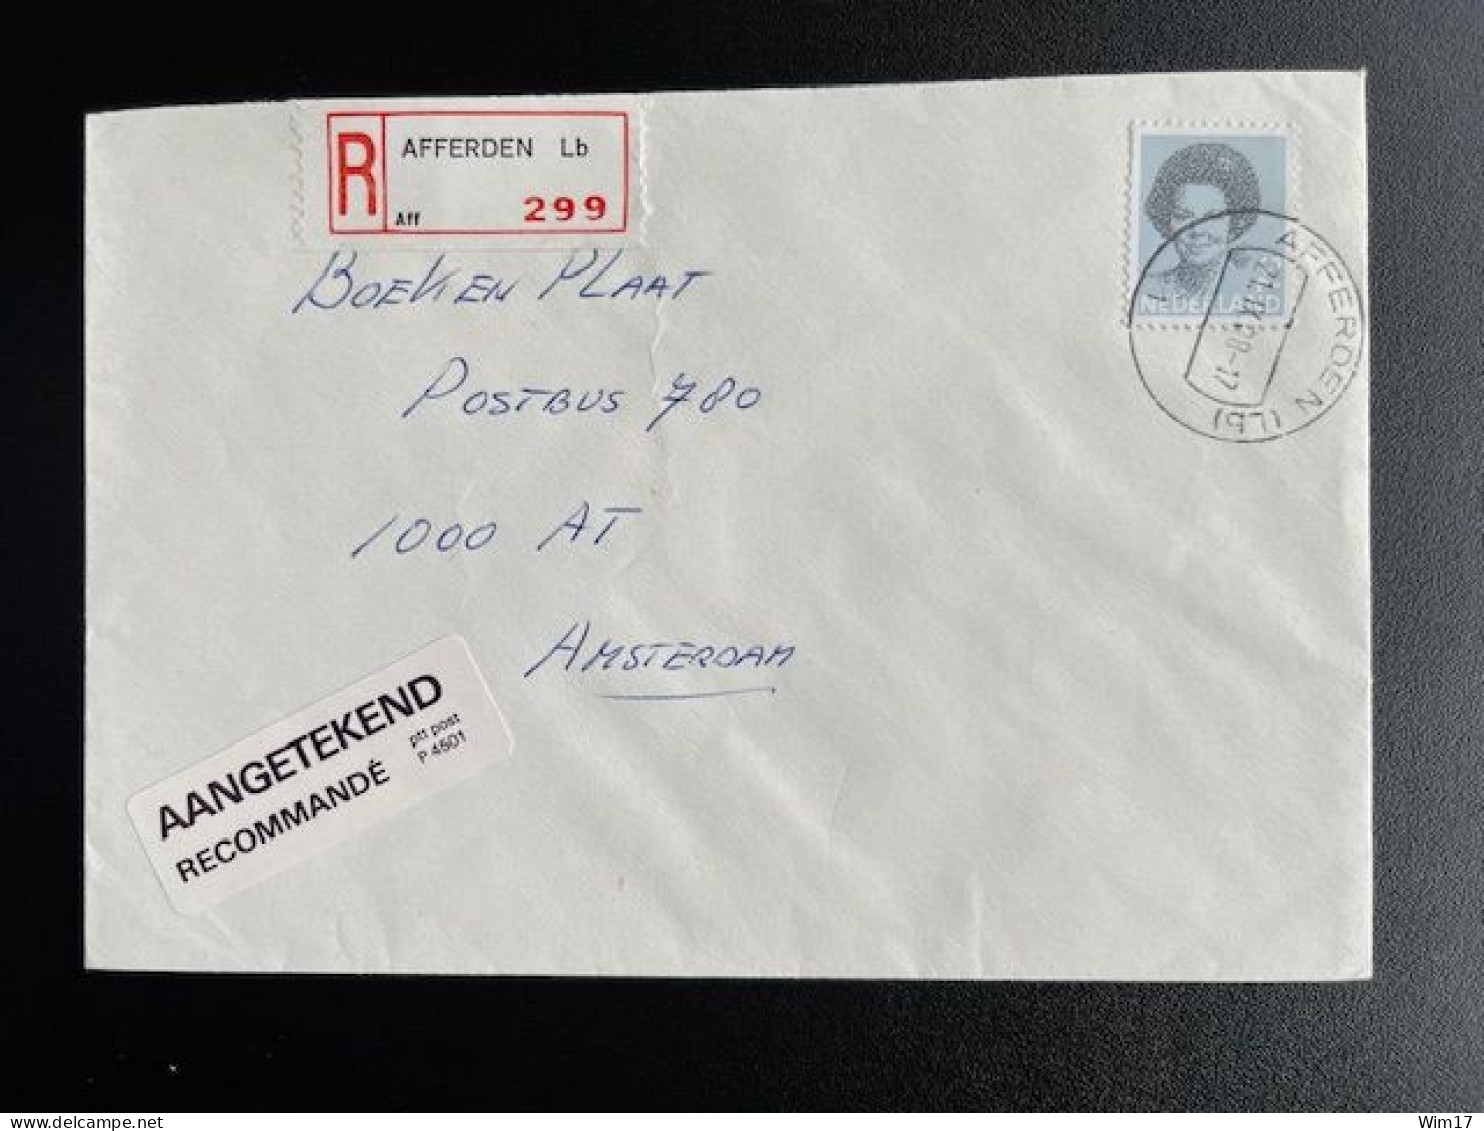 NETHERLANDS 1988 REGISTERED LETTER AFFERDEN (LB) TO AMSTERDAM 21-09-1988 NEDERLAND AANGETEKEND - Cartas & Documentos